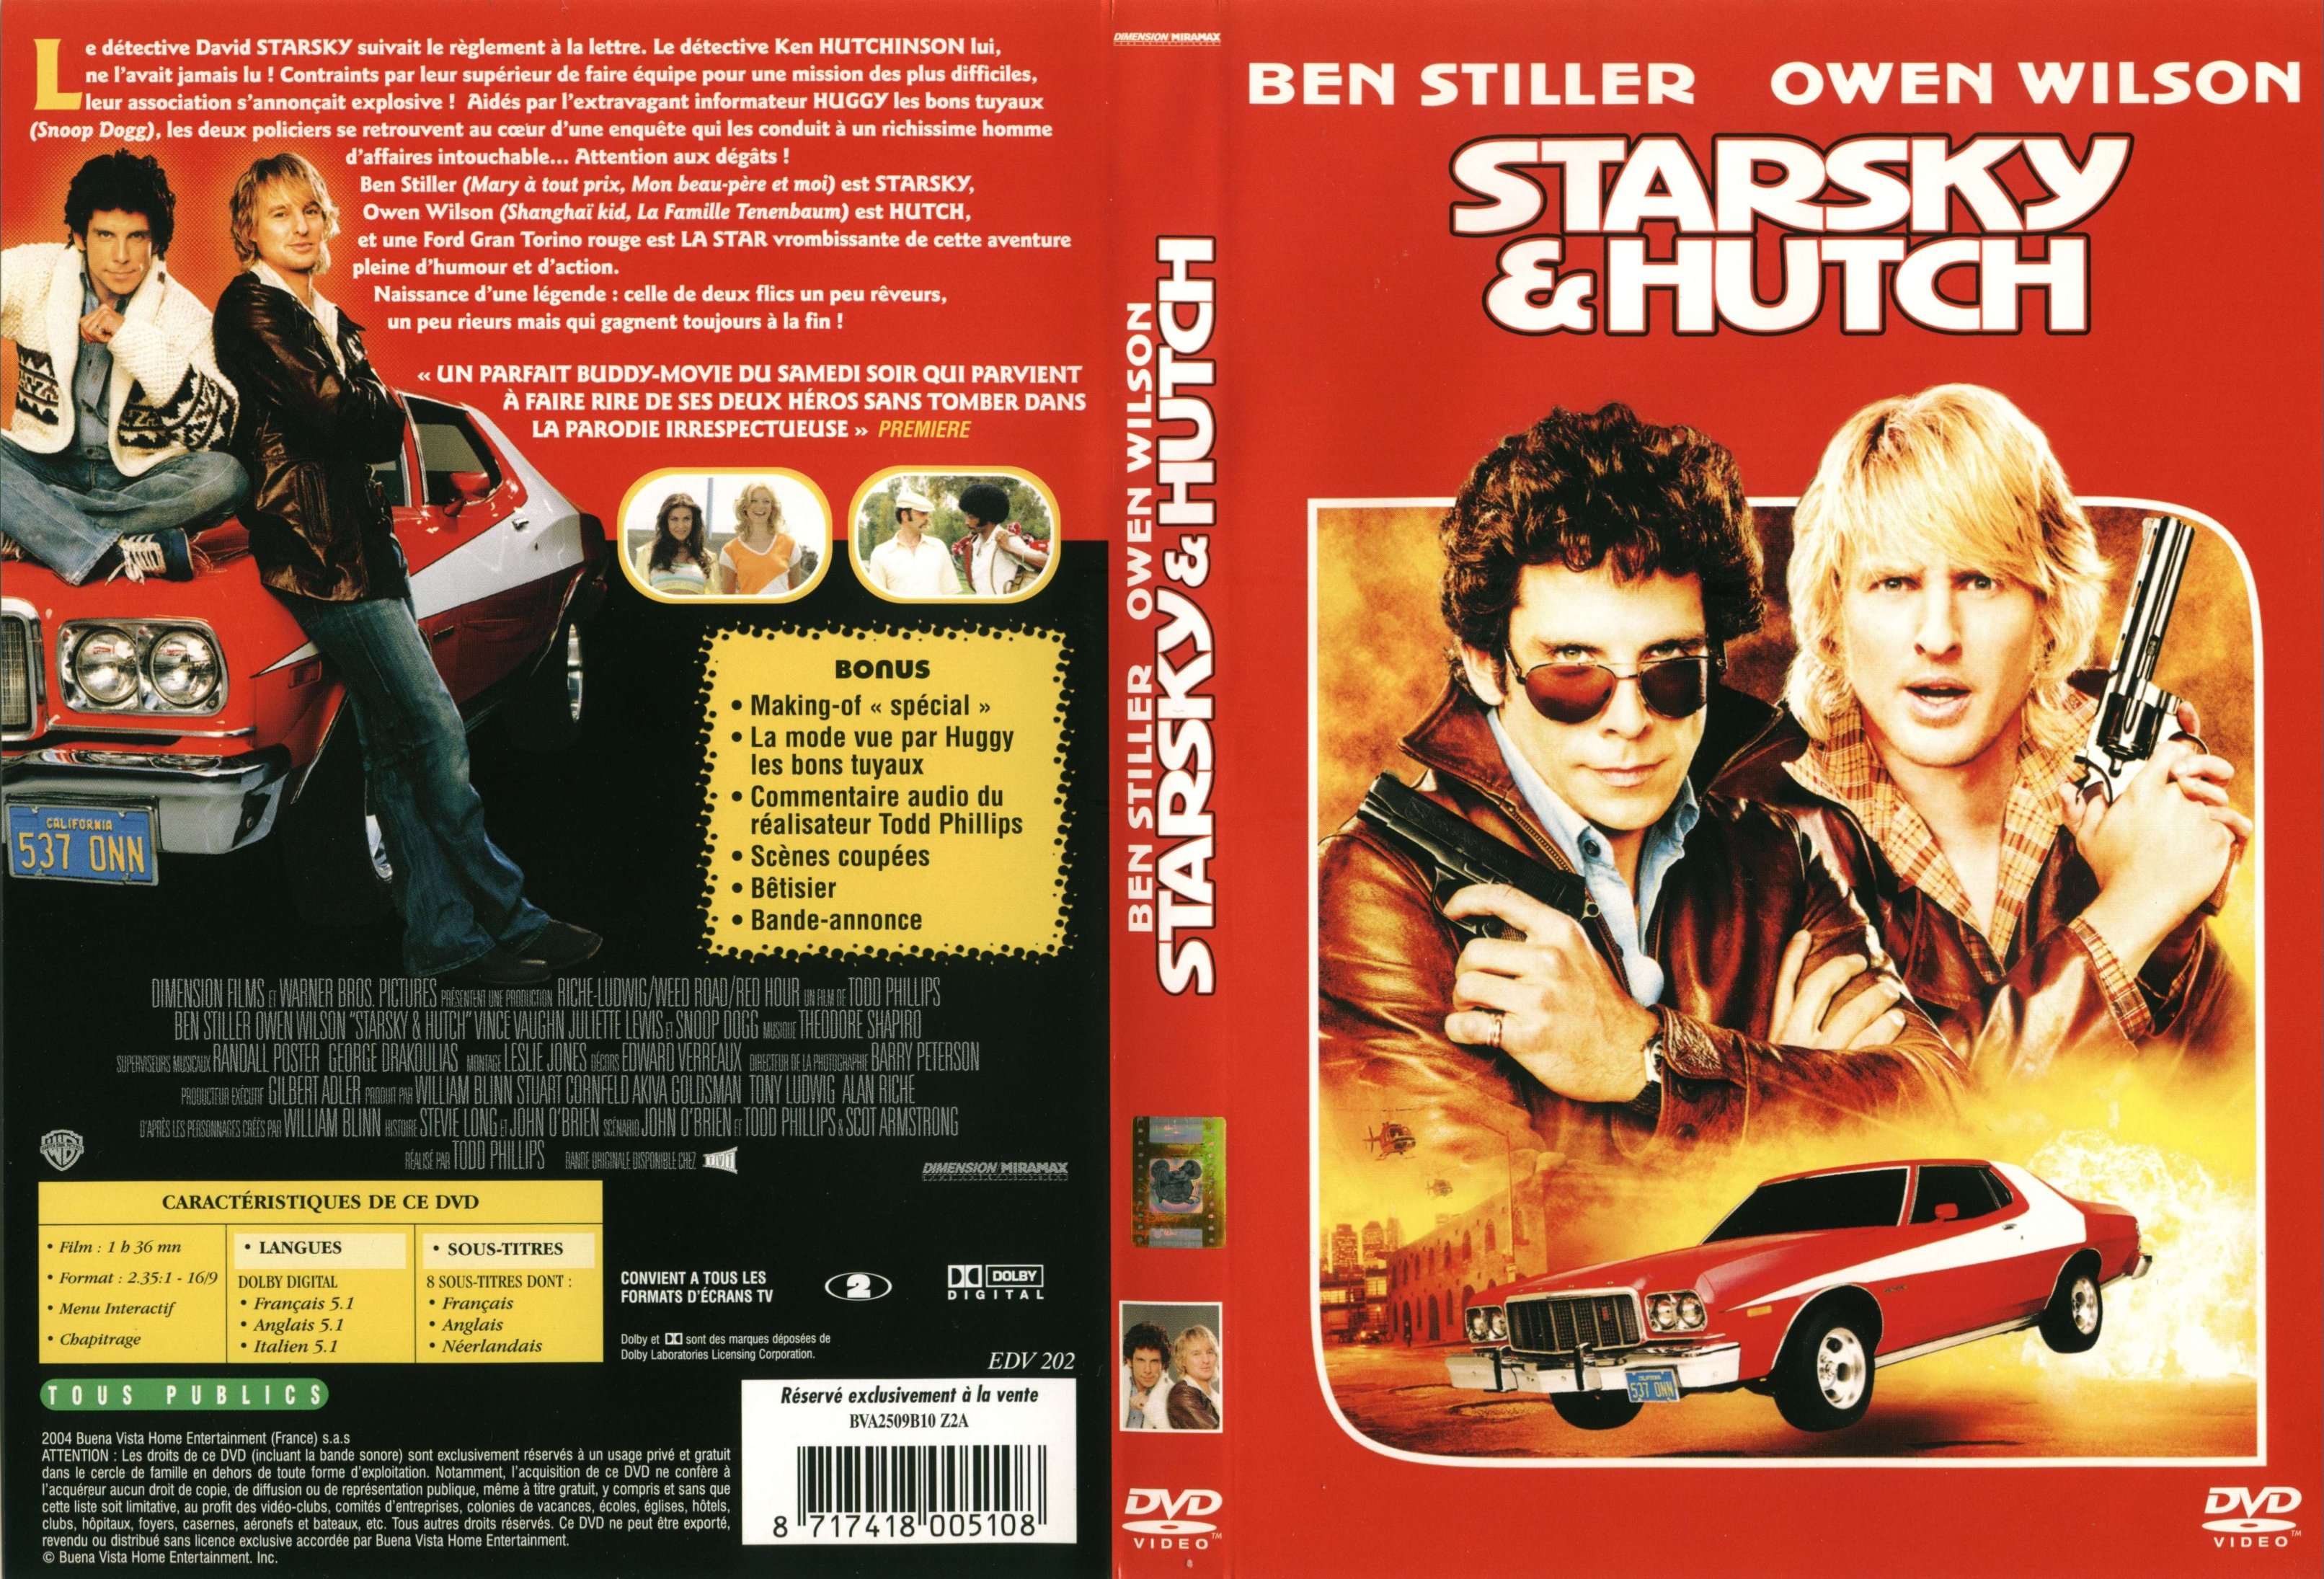 Jaquette DVD Starsky et Hutch